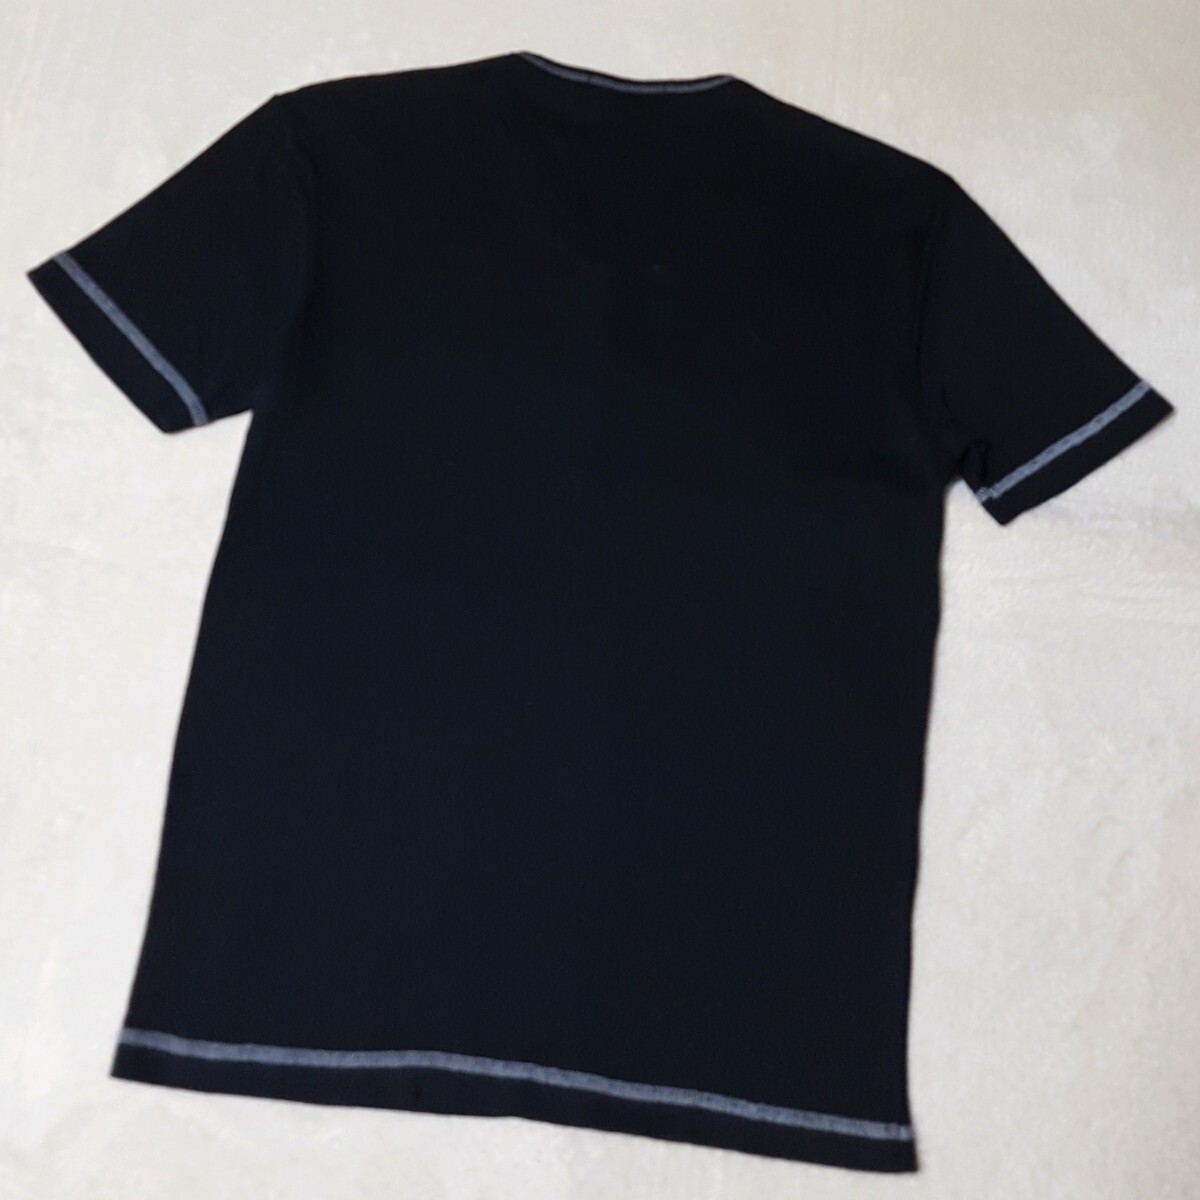 [ превосходный товар ]BURBERRY BLACK LABEL Burberry Black Label шланг вышивка noba проверка термический застежка с планкой футболка cut and sewn чёрный M